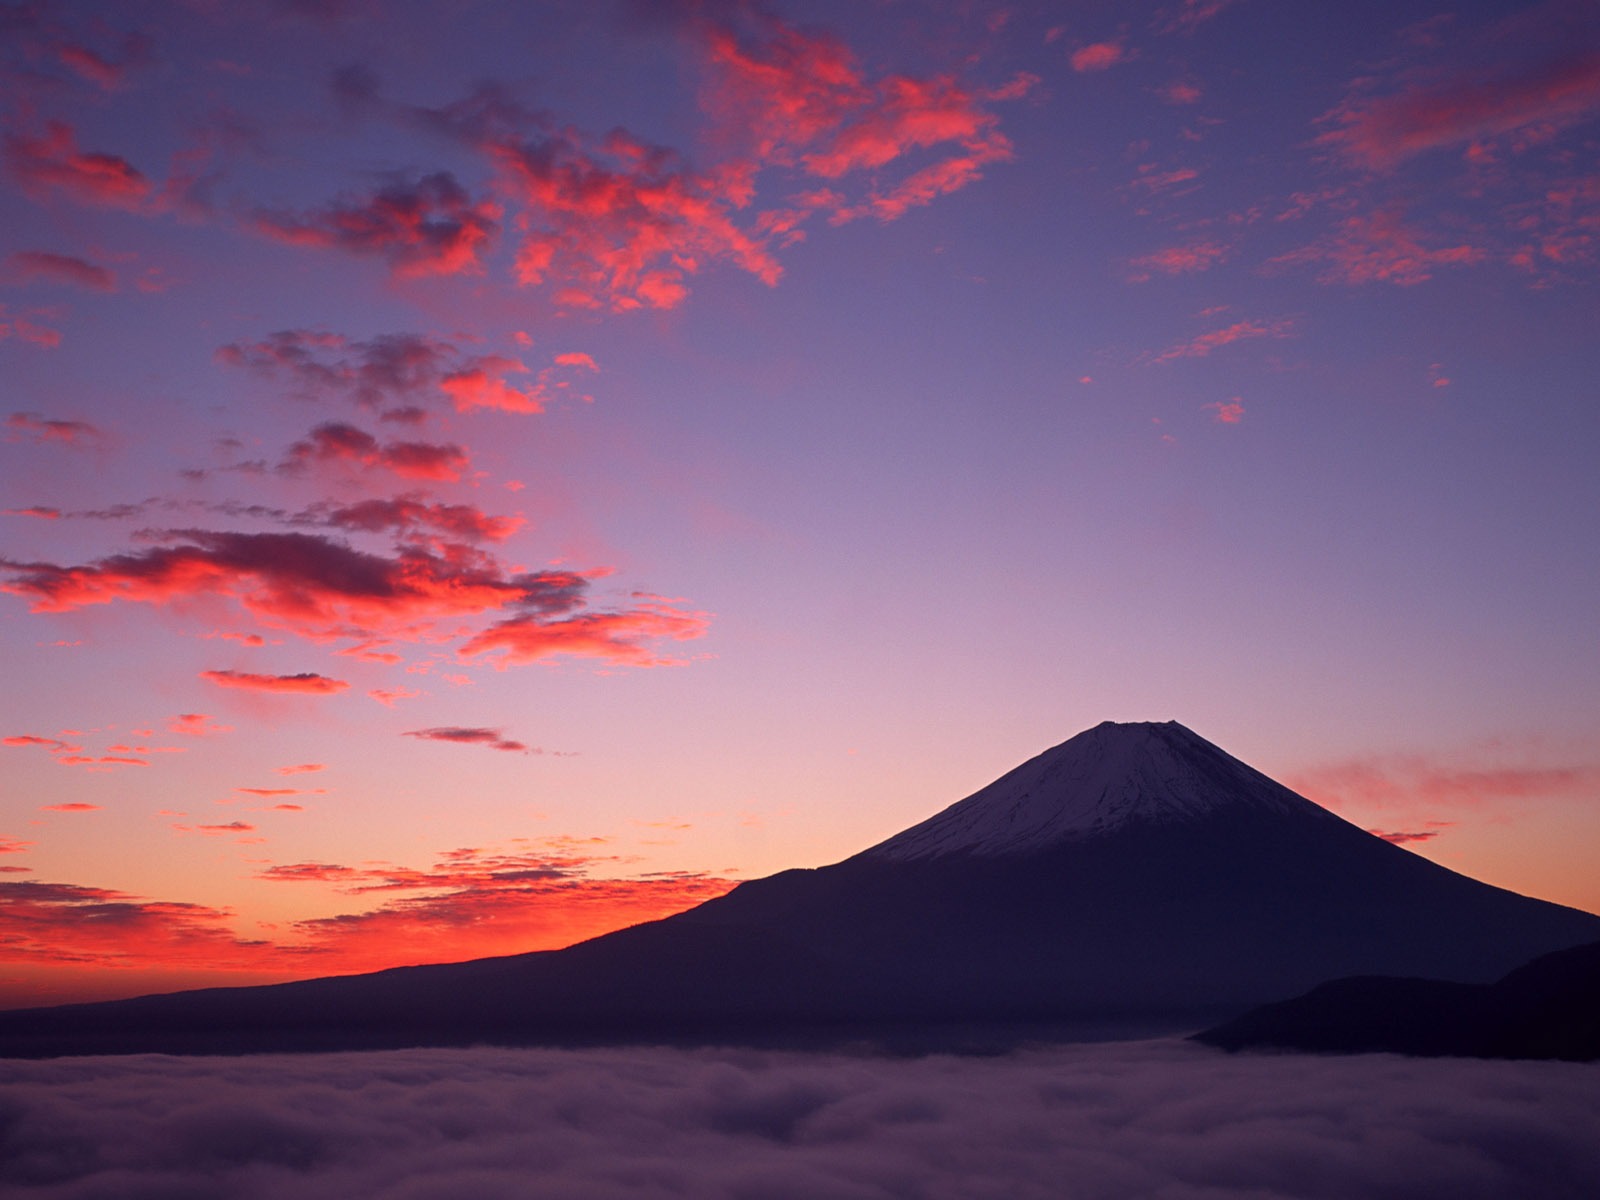 日本富士山壁纸 二 19 1600x10 壁纸下载 日本富士山壁纸 二 风景壁纸 V3壁纸站